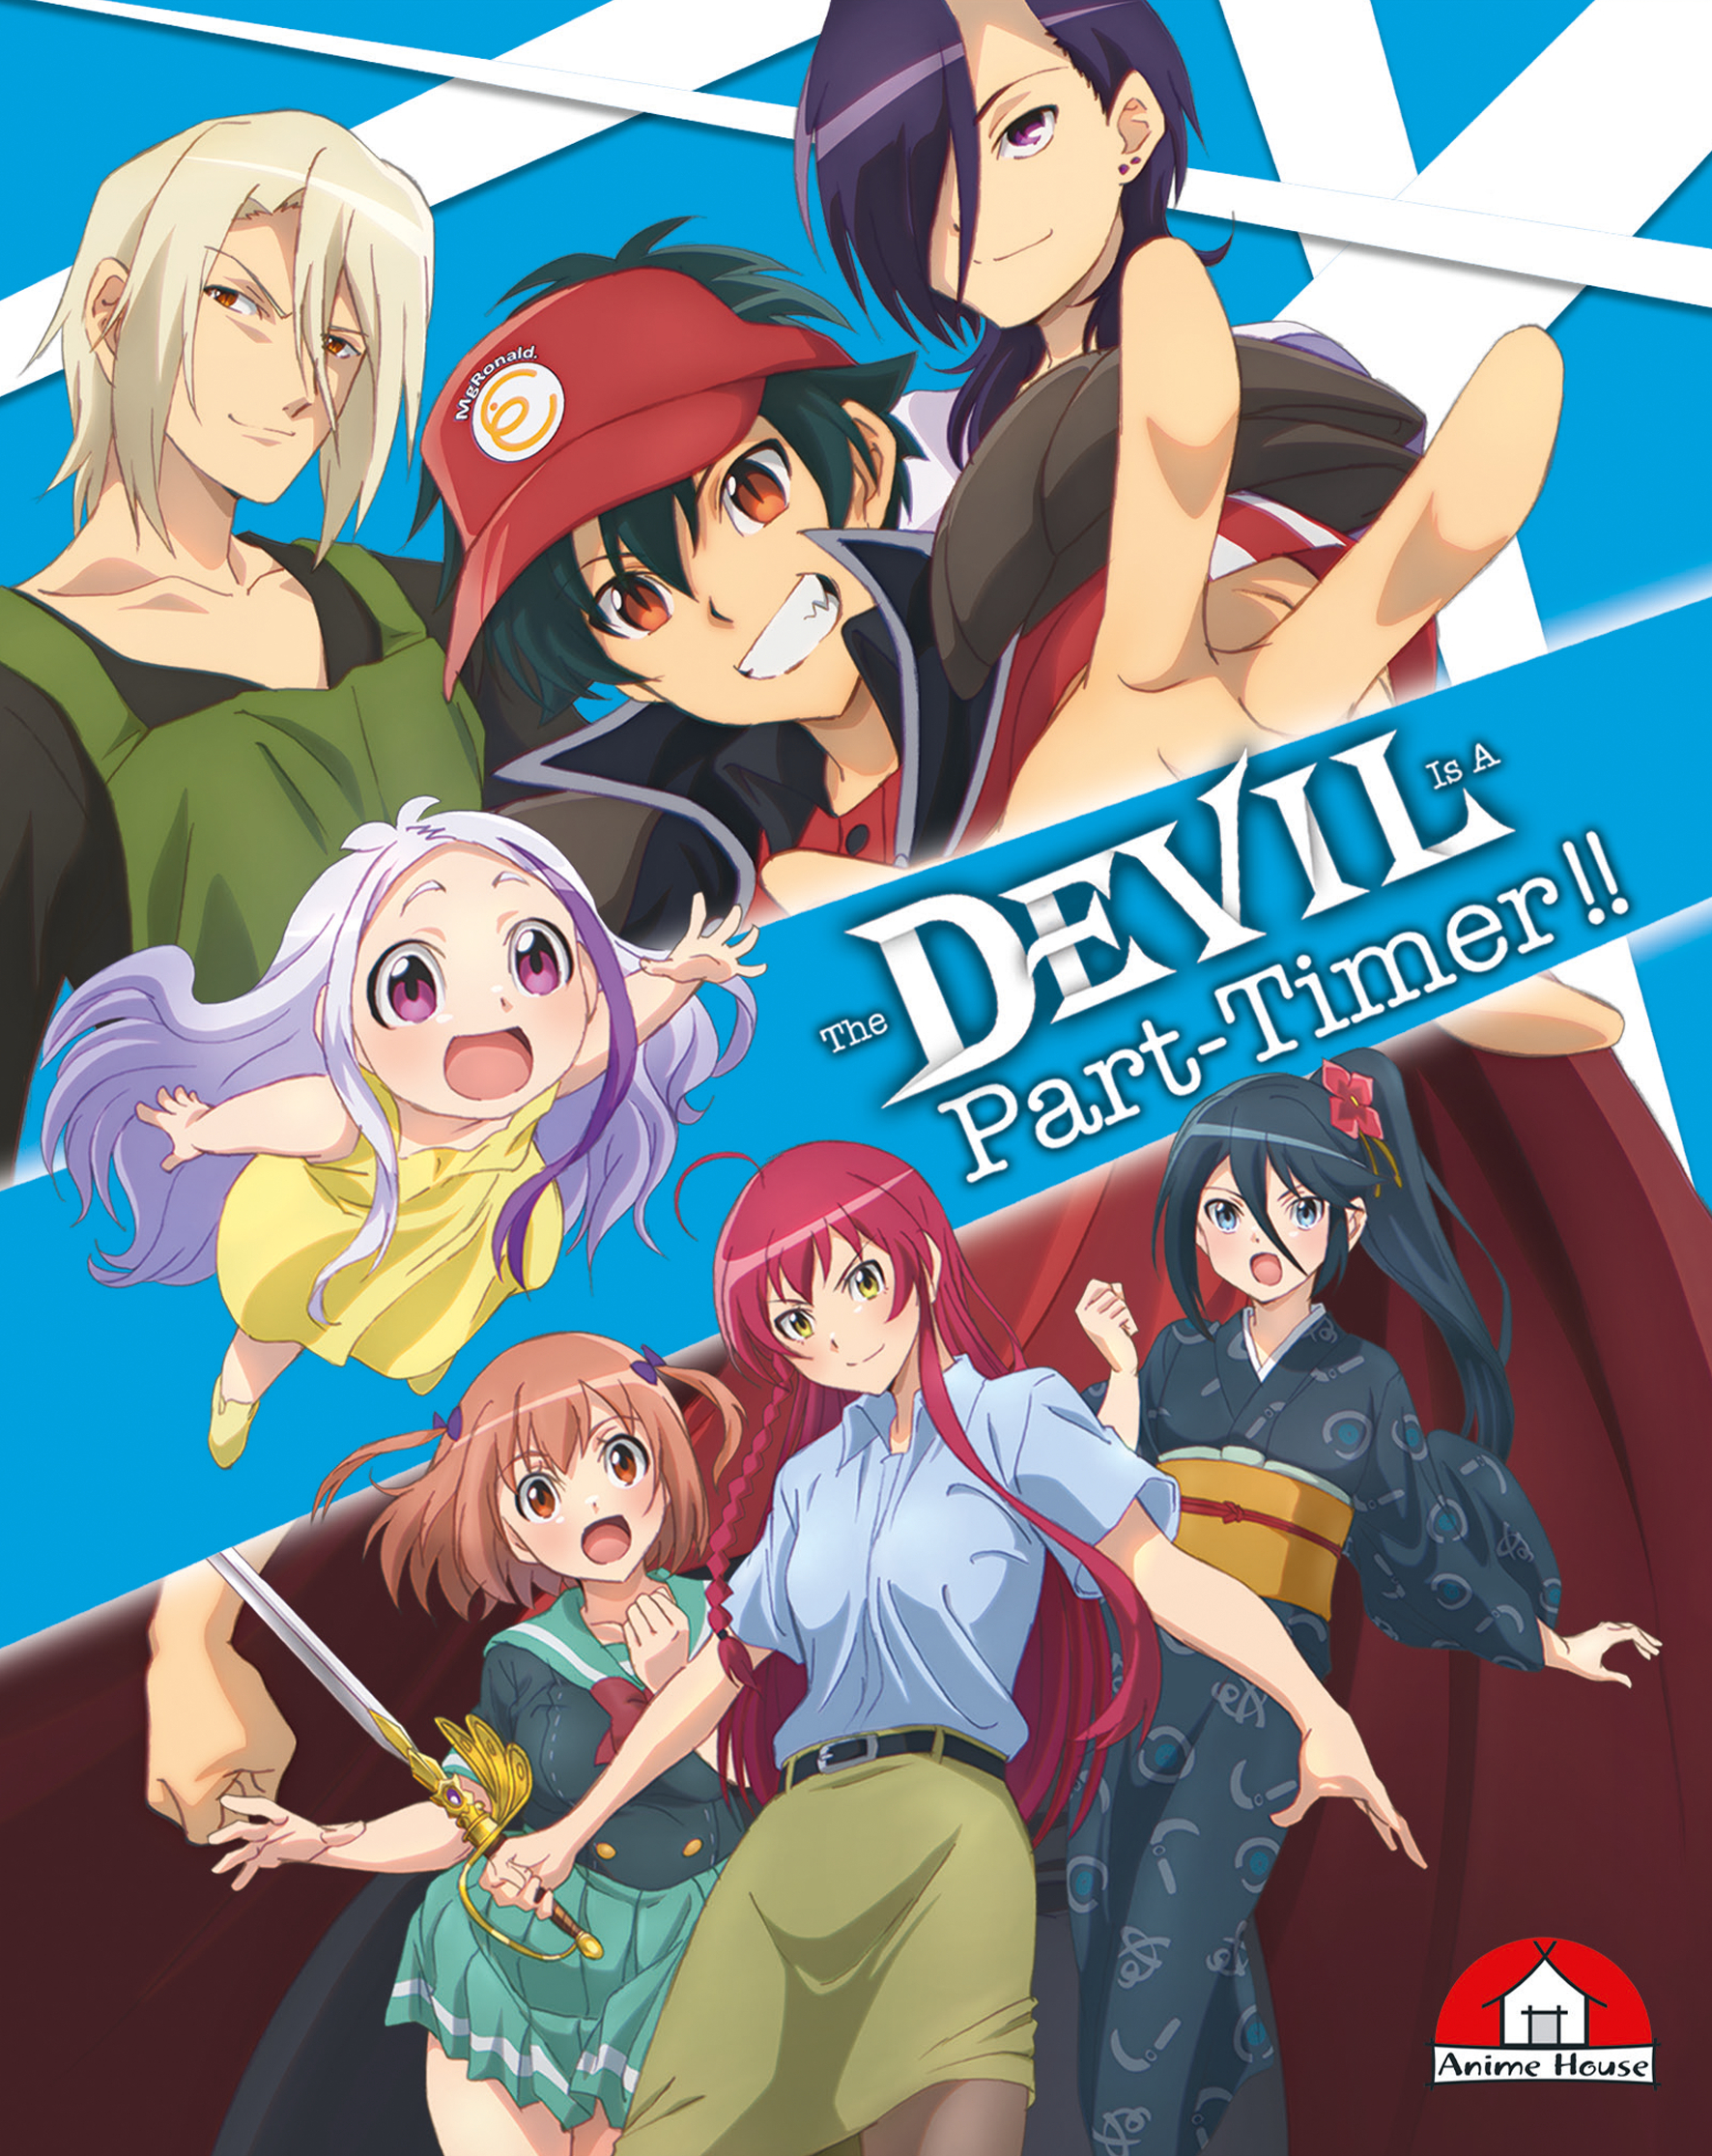 Staffel is a Timer Part Blu-ray Vol.1 2 The - - Devil